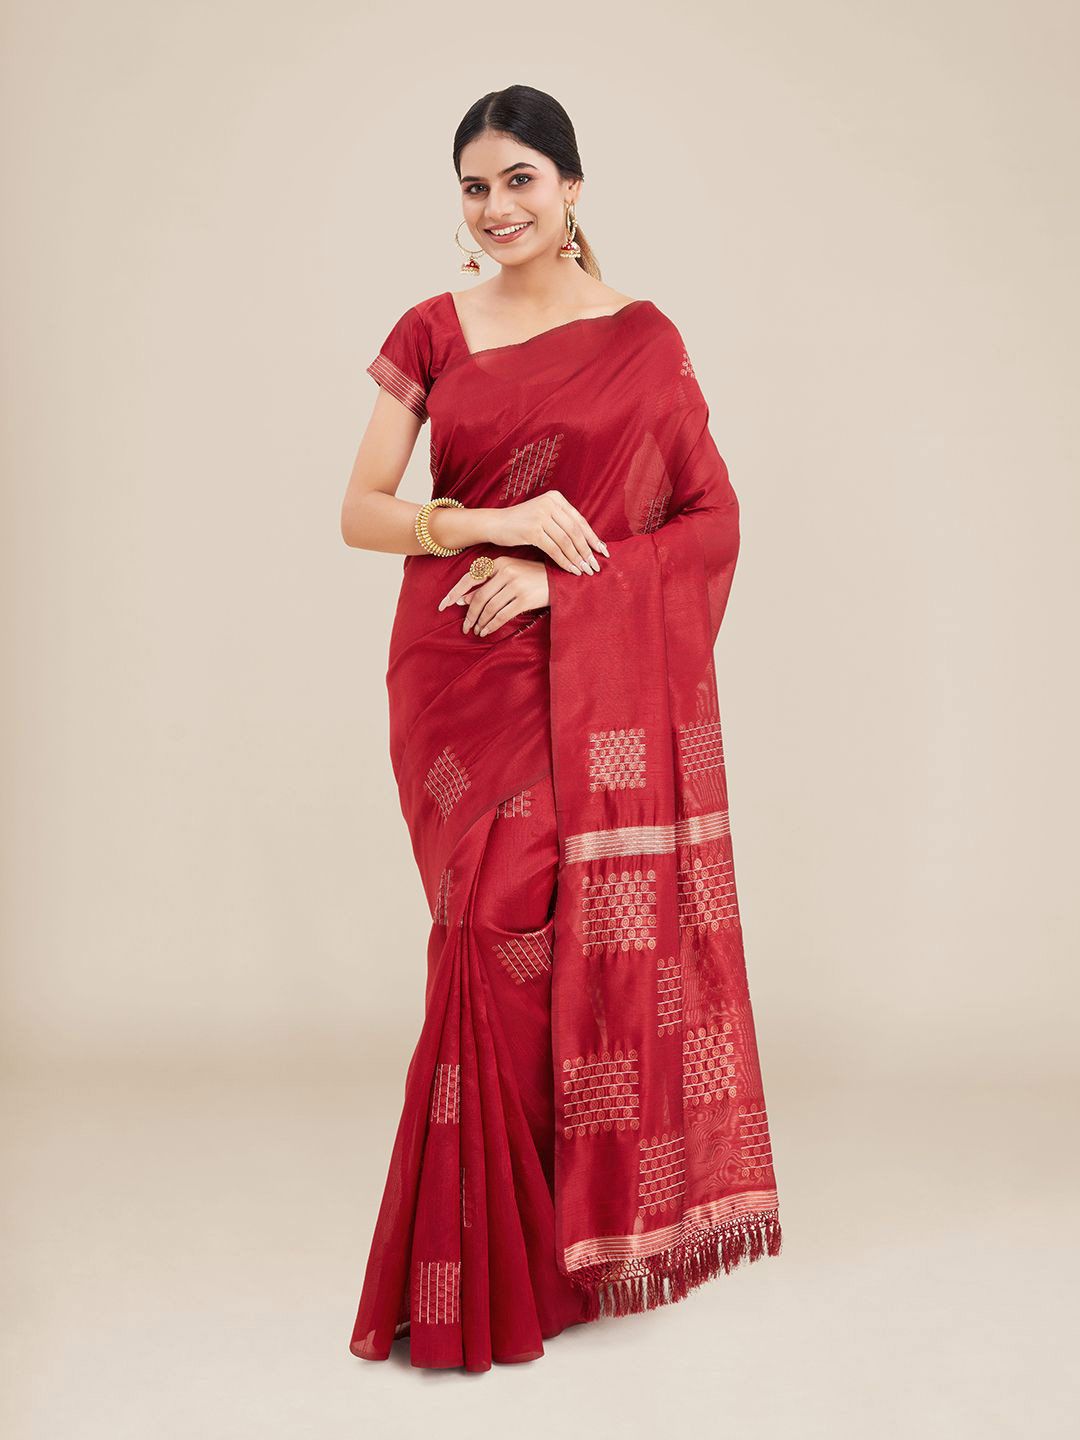 Kalyan Silks Red Ethnic Motifs Saree Price in India